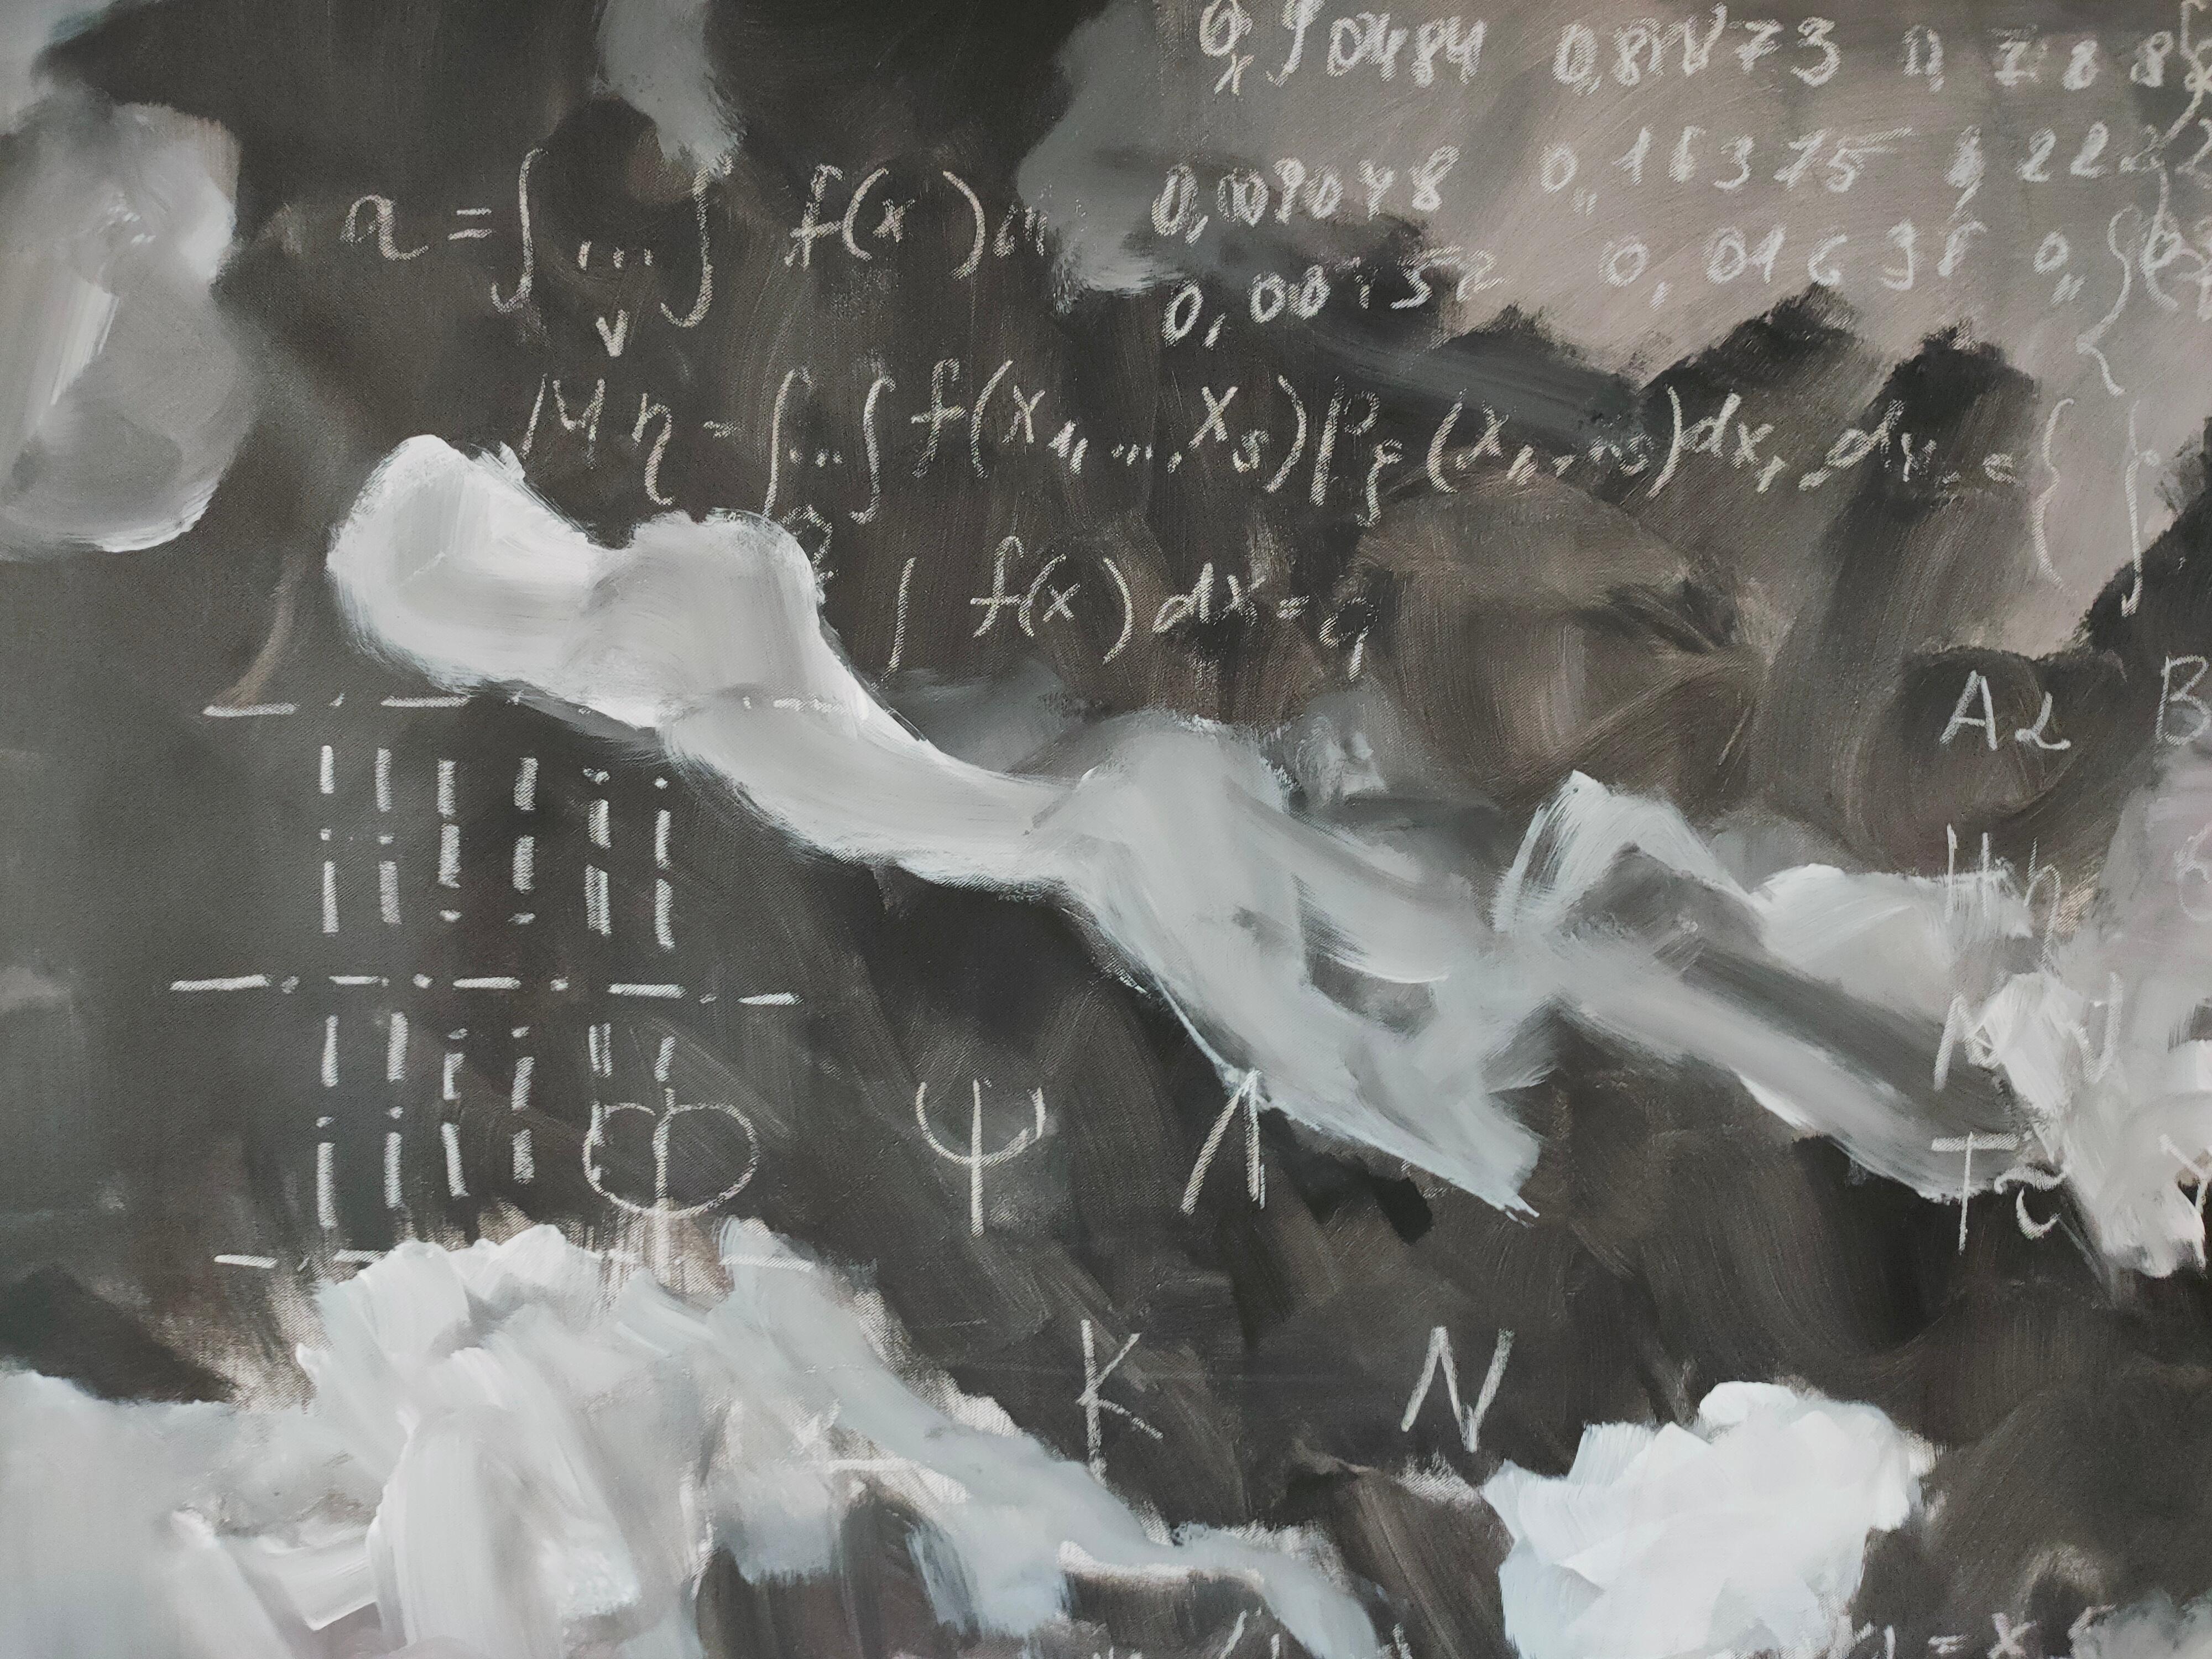 Abstraktes Gemälde in Schwarz-Weiß von Anastasia Vasilyeva aus der Science Art Collection.
Mathematische Formeln, das griechische Alphabet und Symbole auf abstraktem monochromen Hintergrund, gemalt im Expressionsstil.

Dieses große Kunstwerk ist in